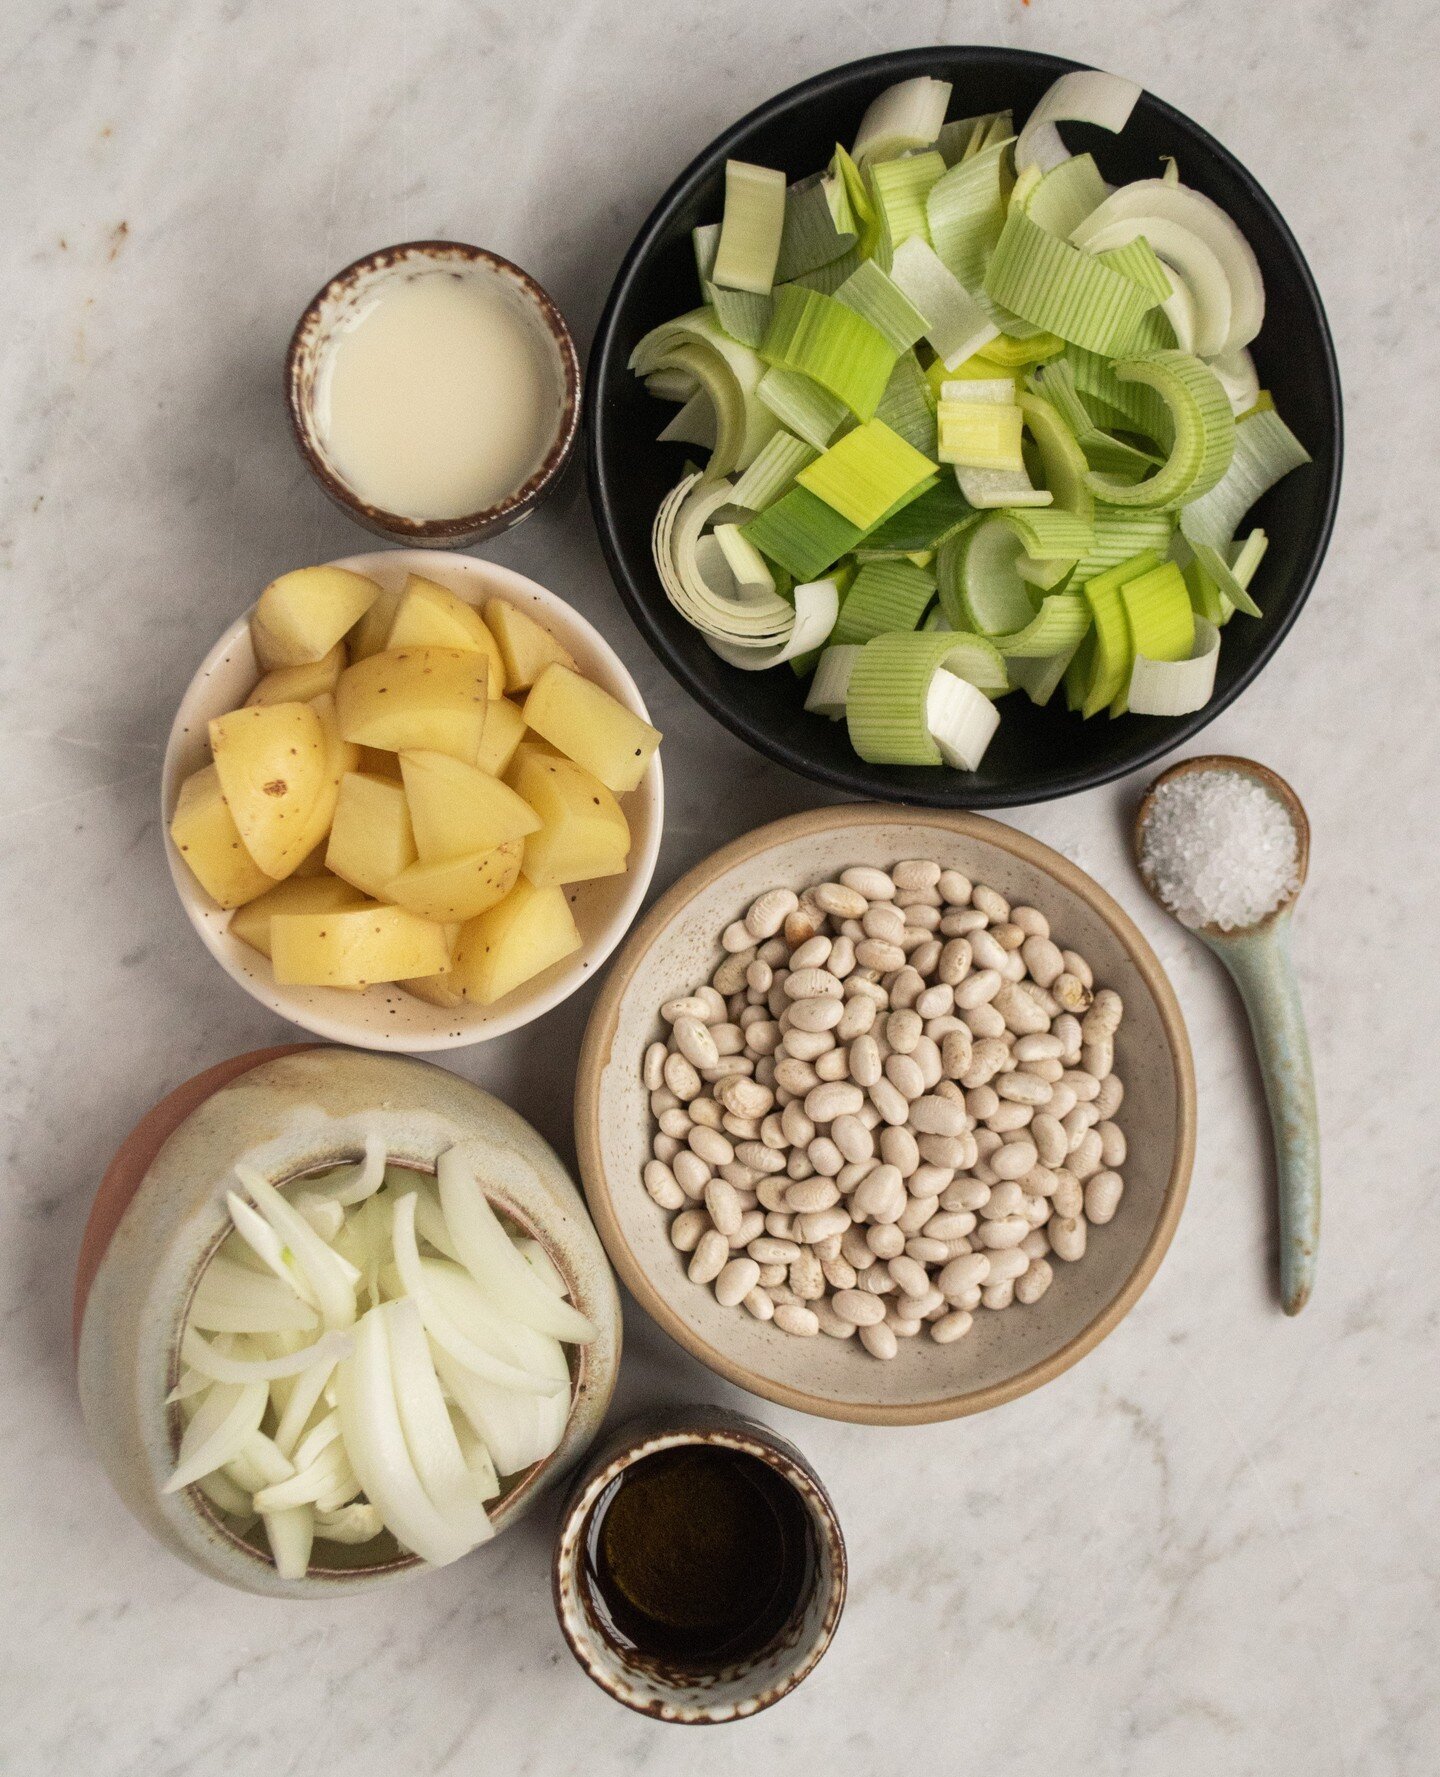 Des ingr&eacute;dients simples, une grande saveur. Notre soupe aux poireaux et aux pommes de terre est &agrave; essayer absolument ! 🥔⁠
.⁠
Simple ingredients, big flavor. Our Potato Leek Soup is a must-try! 🥔